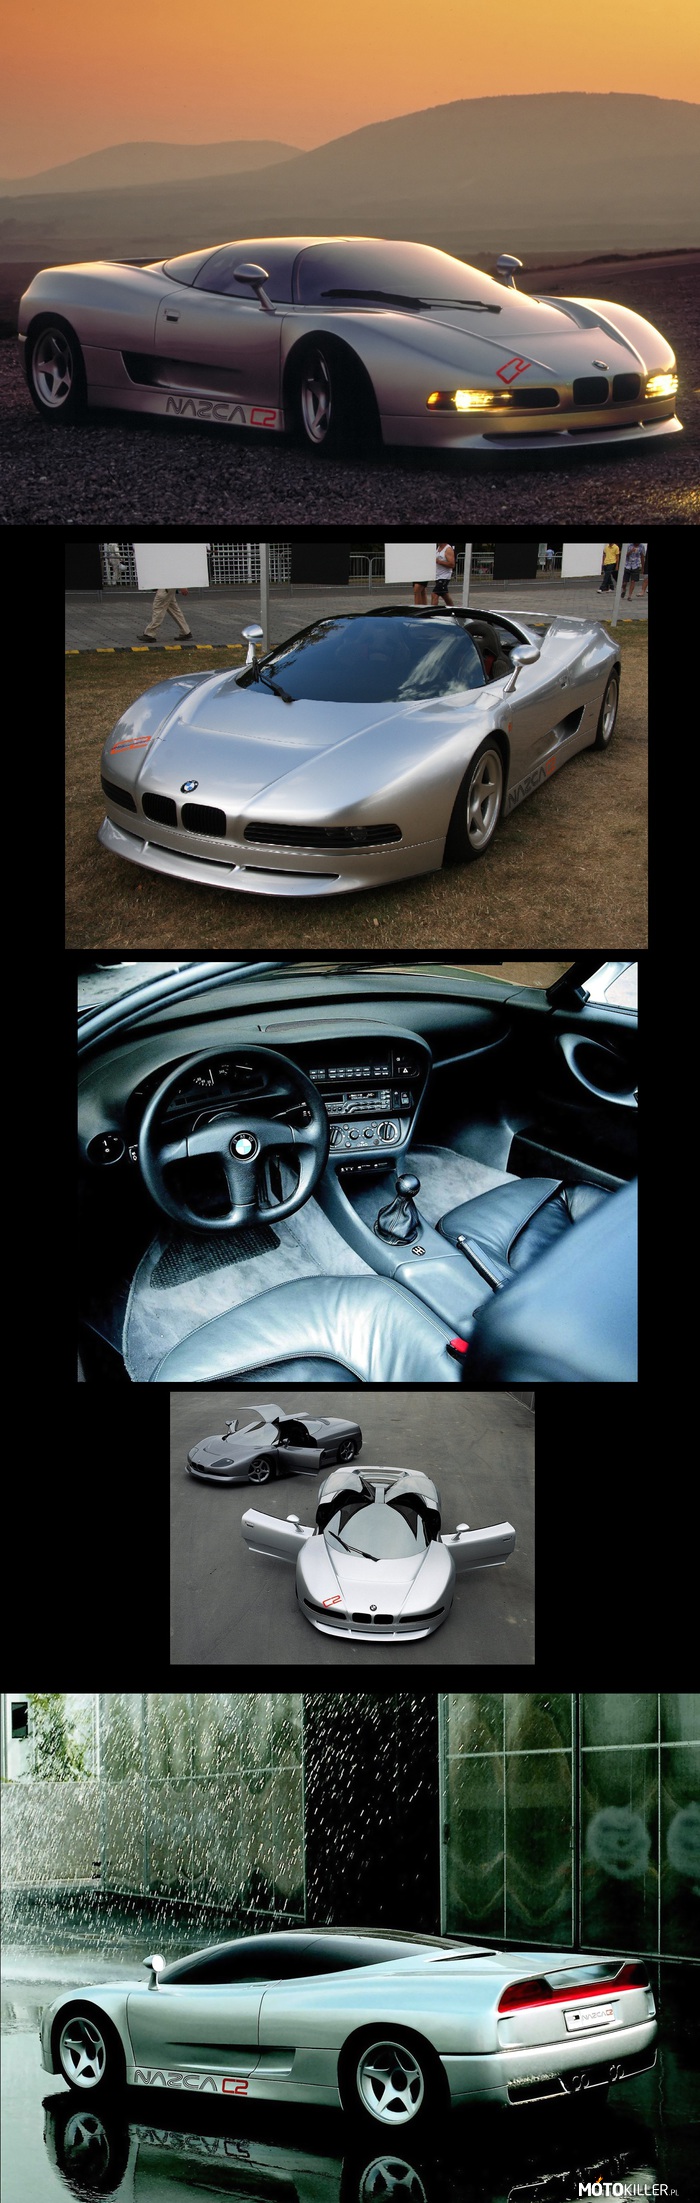 Z serii: niecodzienne koncepty - BMW Nazca C2 – Koncept z 1991 r. 
Pod maską umieszczony został 5 litrowy silnik, o mocy ok 380 KM.
Prędkość maksymalna dochodzi do 327 km/h, zaś prędkość 100 km/h osiąga po 3,7 sekundy.

Powstały tylko 3 egzemplarze tego modelu. 